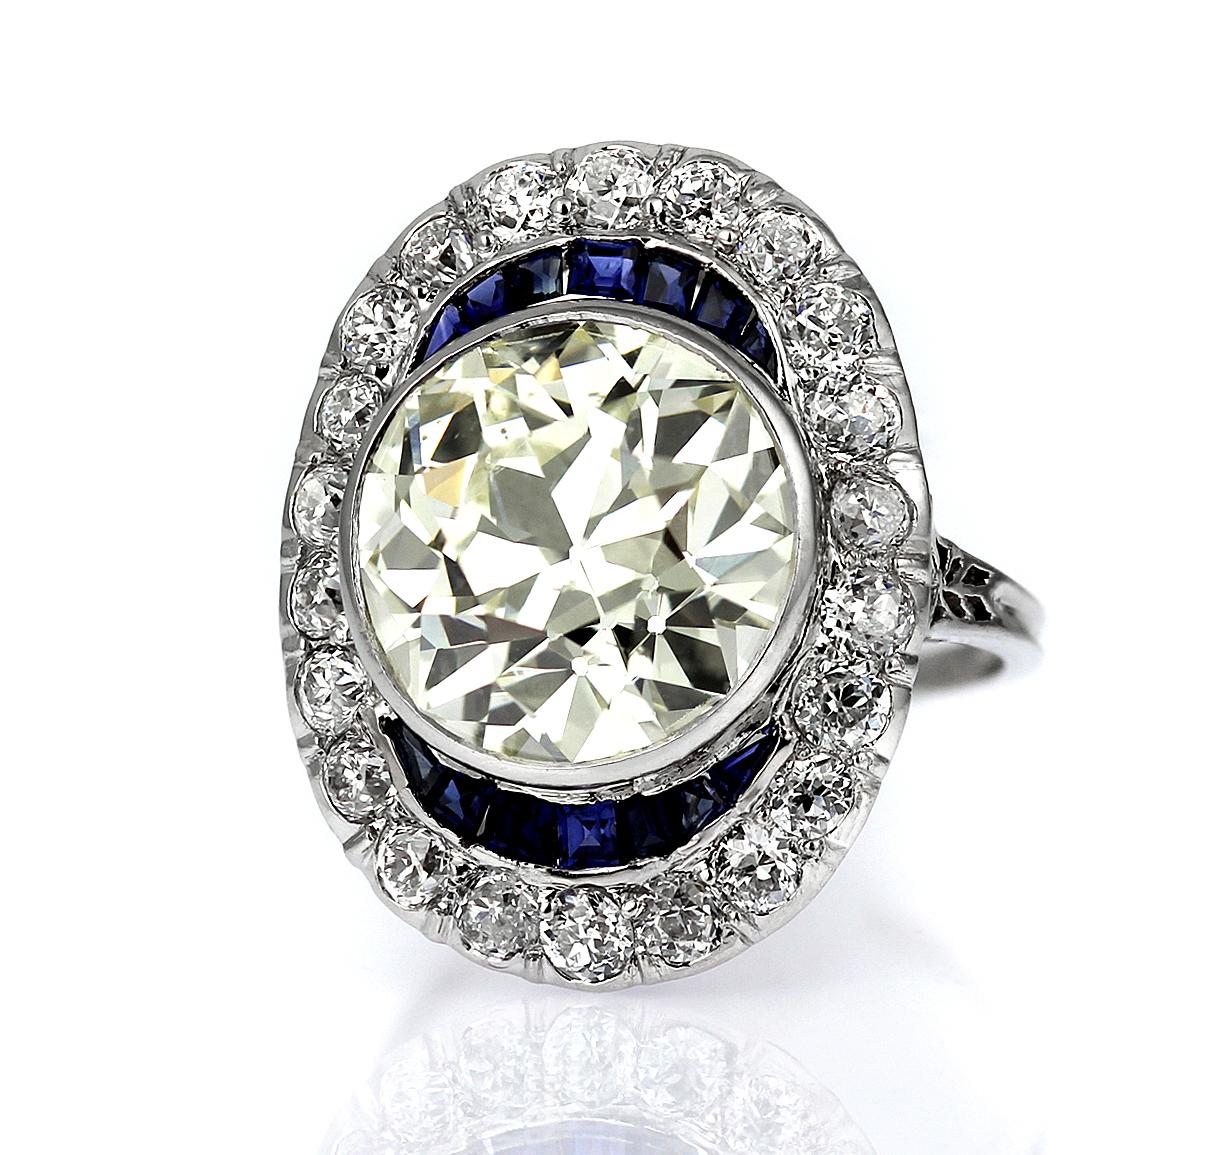 Retro Antique Big Diamond 6.6 ct with Sapphire Ring in Platinum